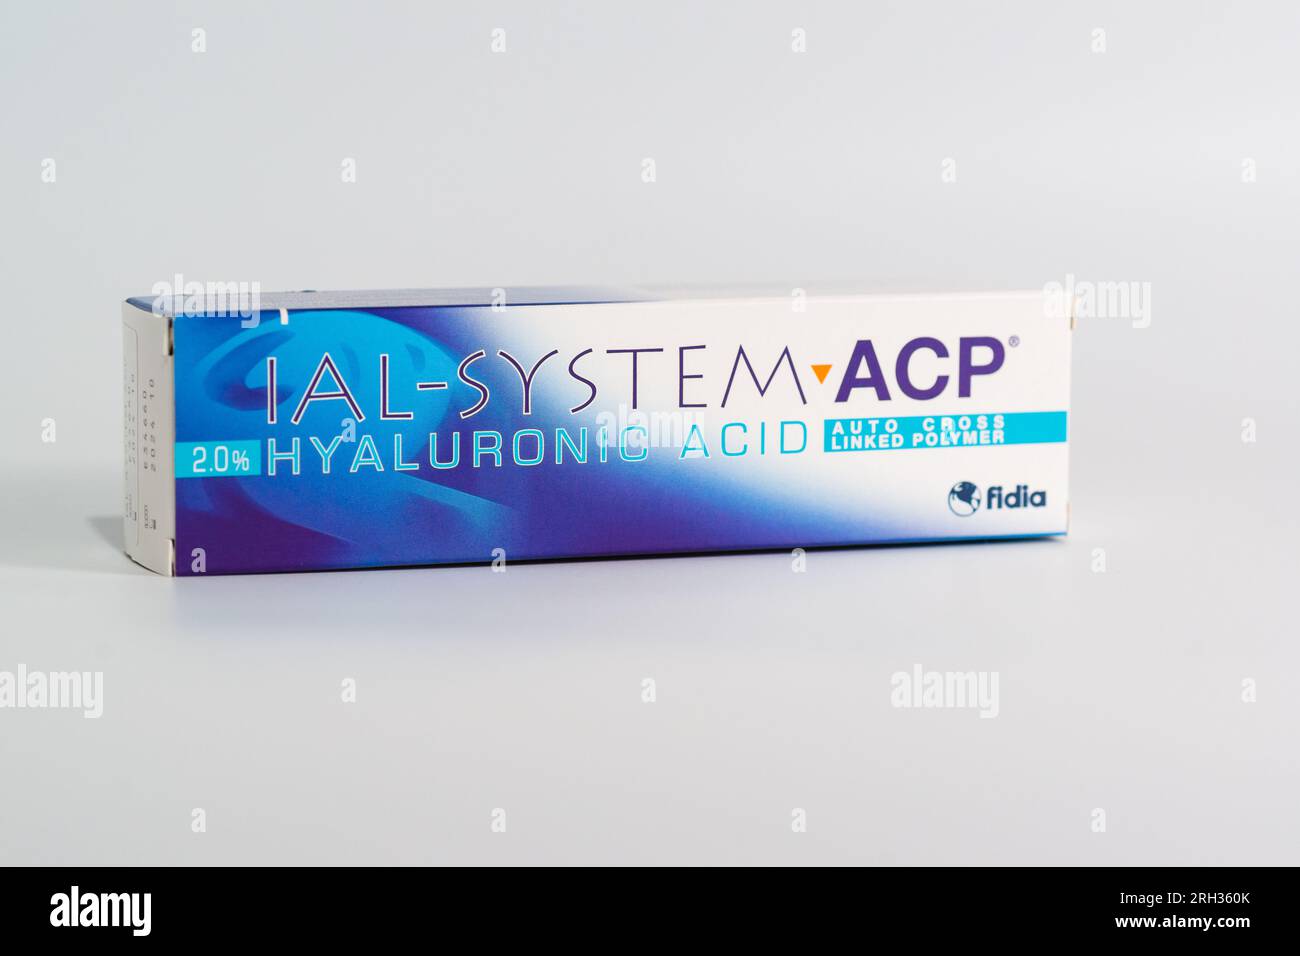 Russia, Krasnodar - 22 novembre 2022: Una scatola di preparazione cosmetica IAL-System ACP si trova su uno sfondo grigio Foto Stock